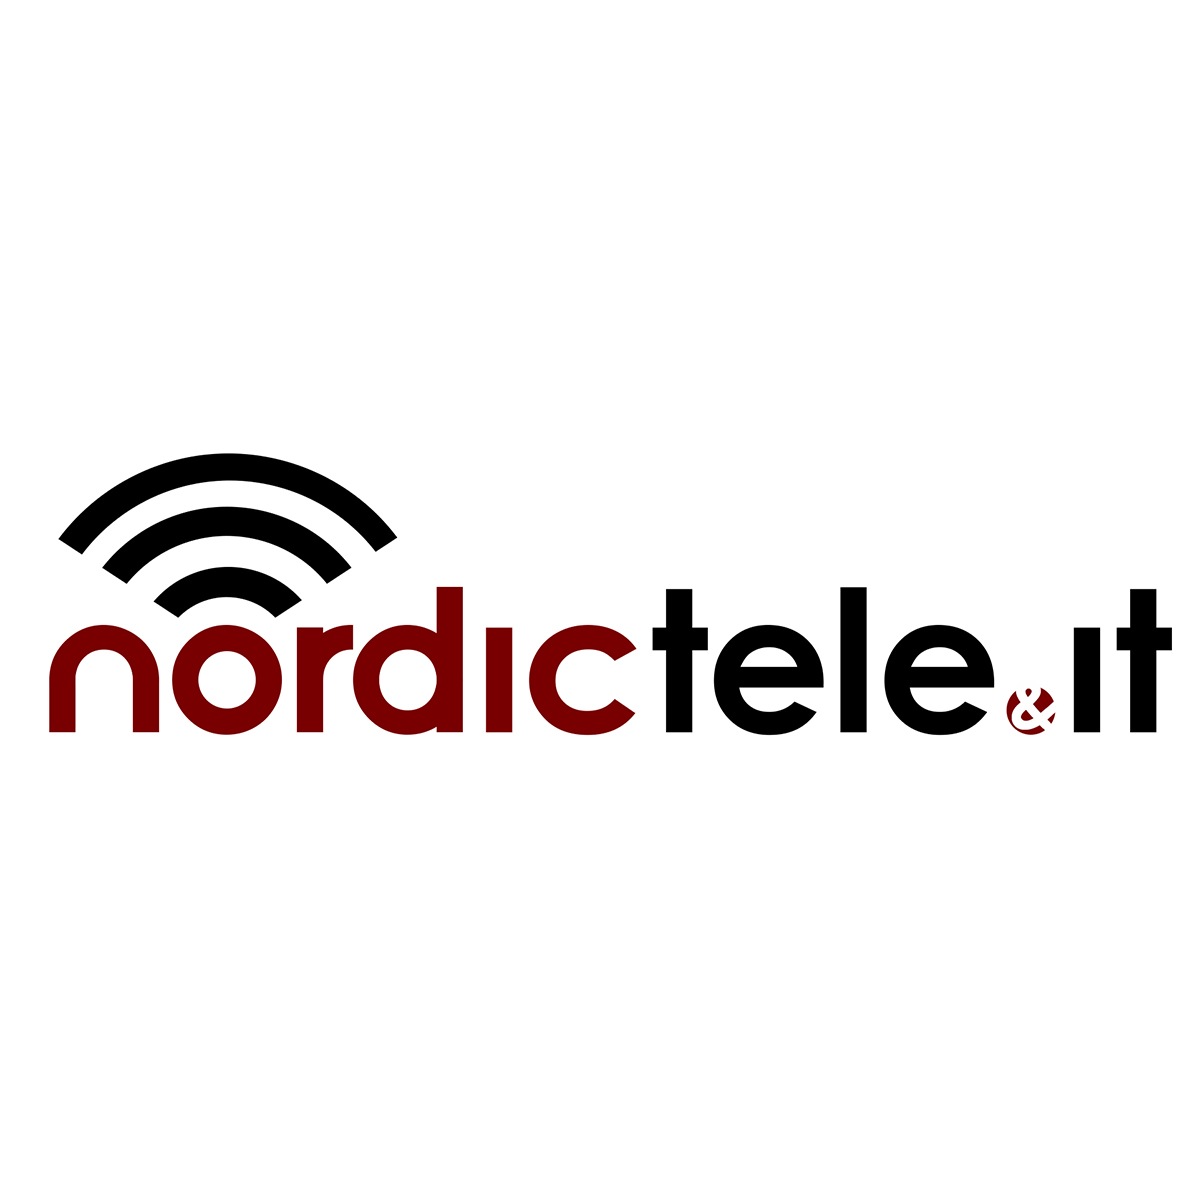 NordicTeleIT logo design